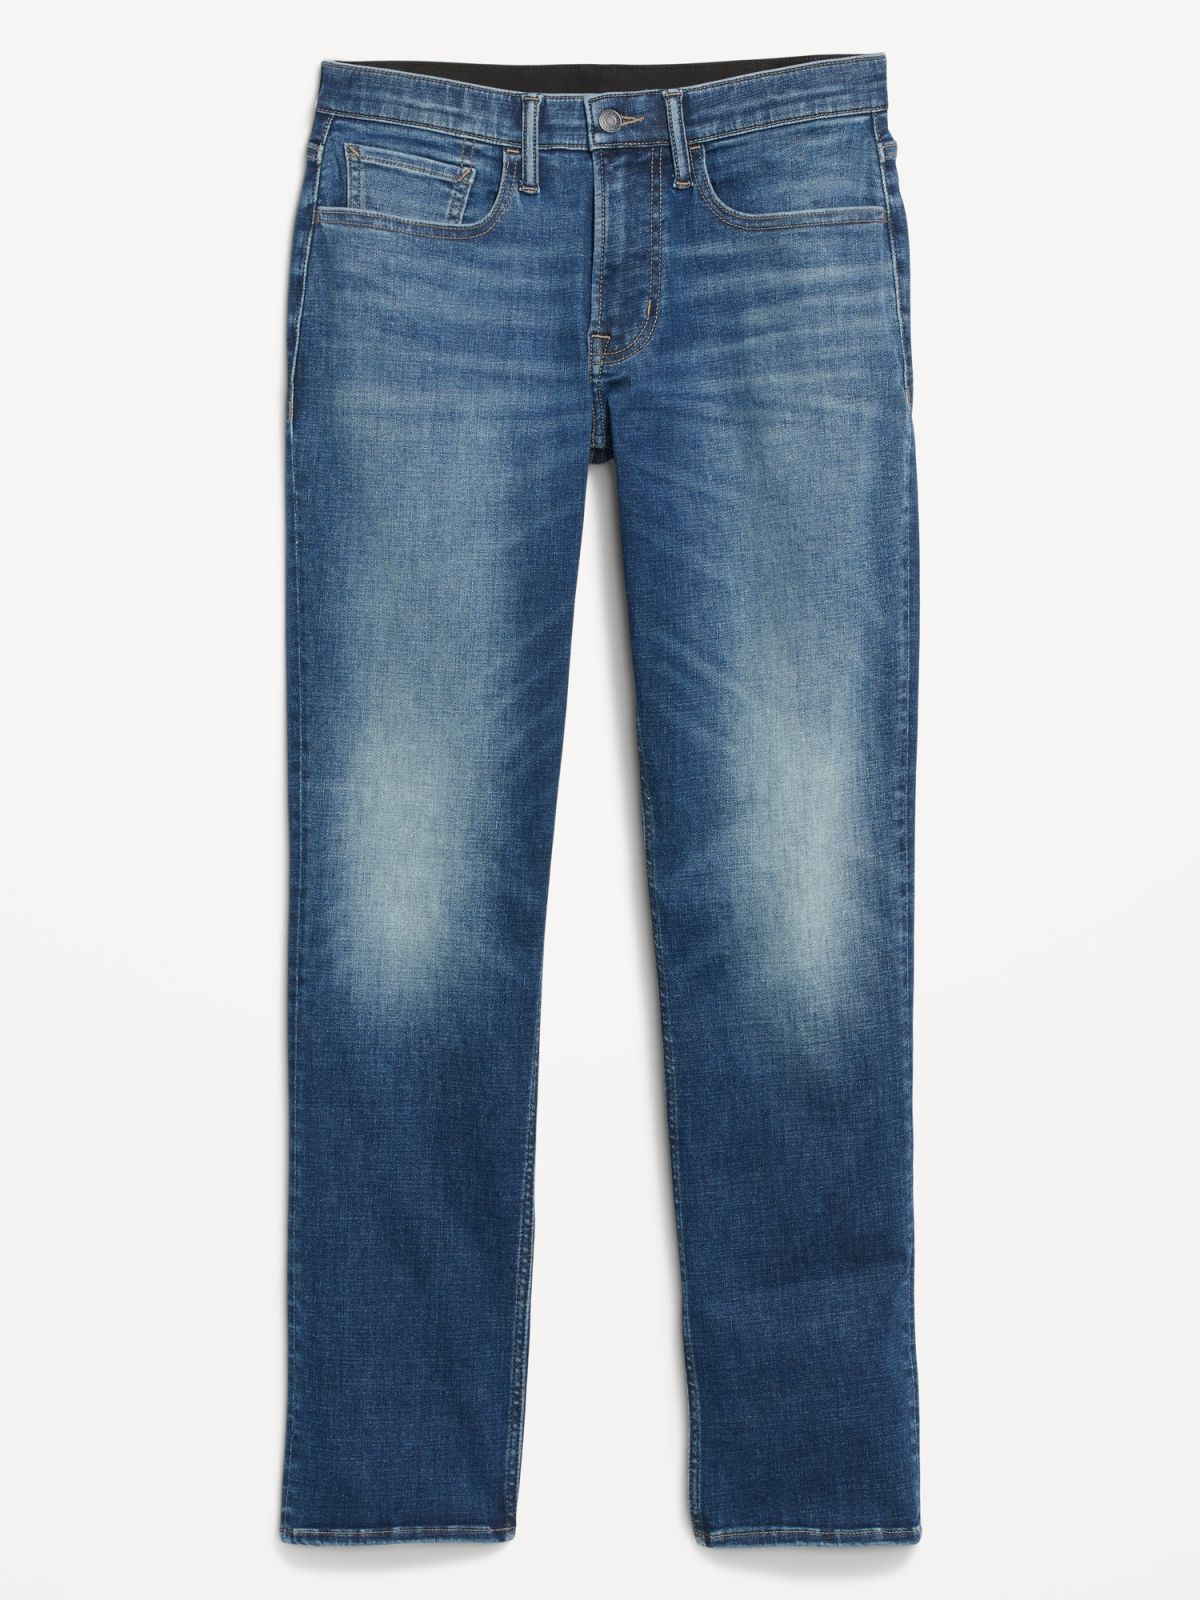  מכנסי ג'ינס בגזת STRAIGHT / גברים של OLD NAVY